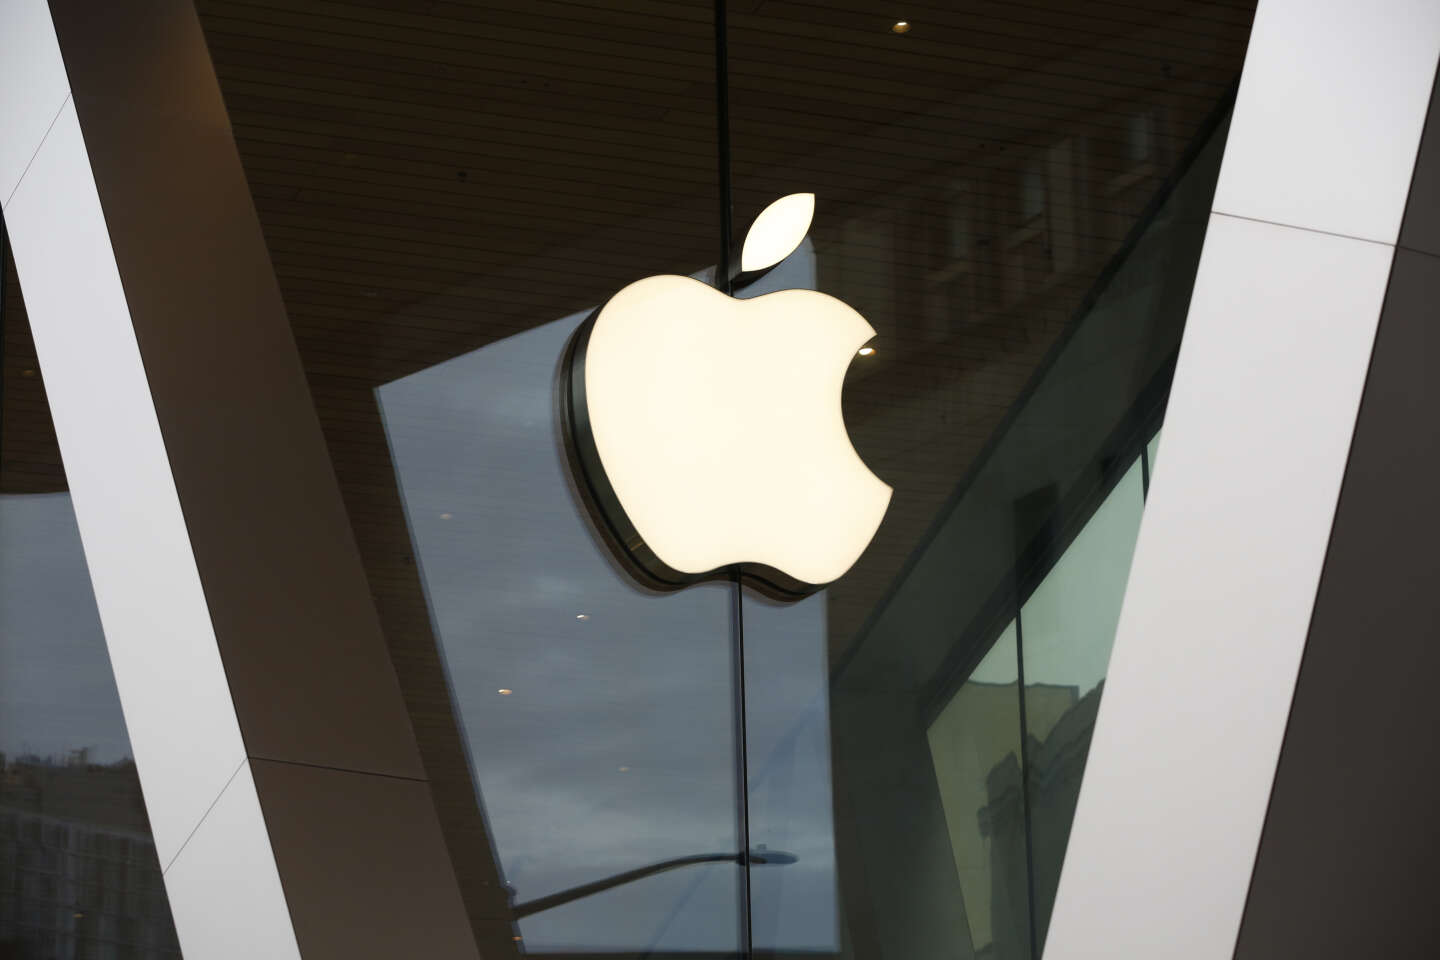 L’editore “Fortnite” non è riuscito a convincere i tribunali a dimostrare il monopolio di Apple